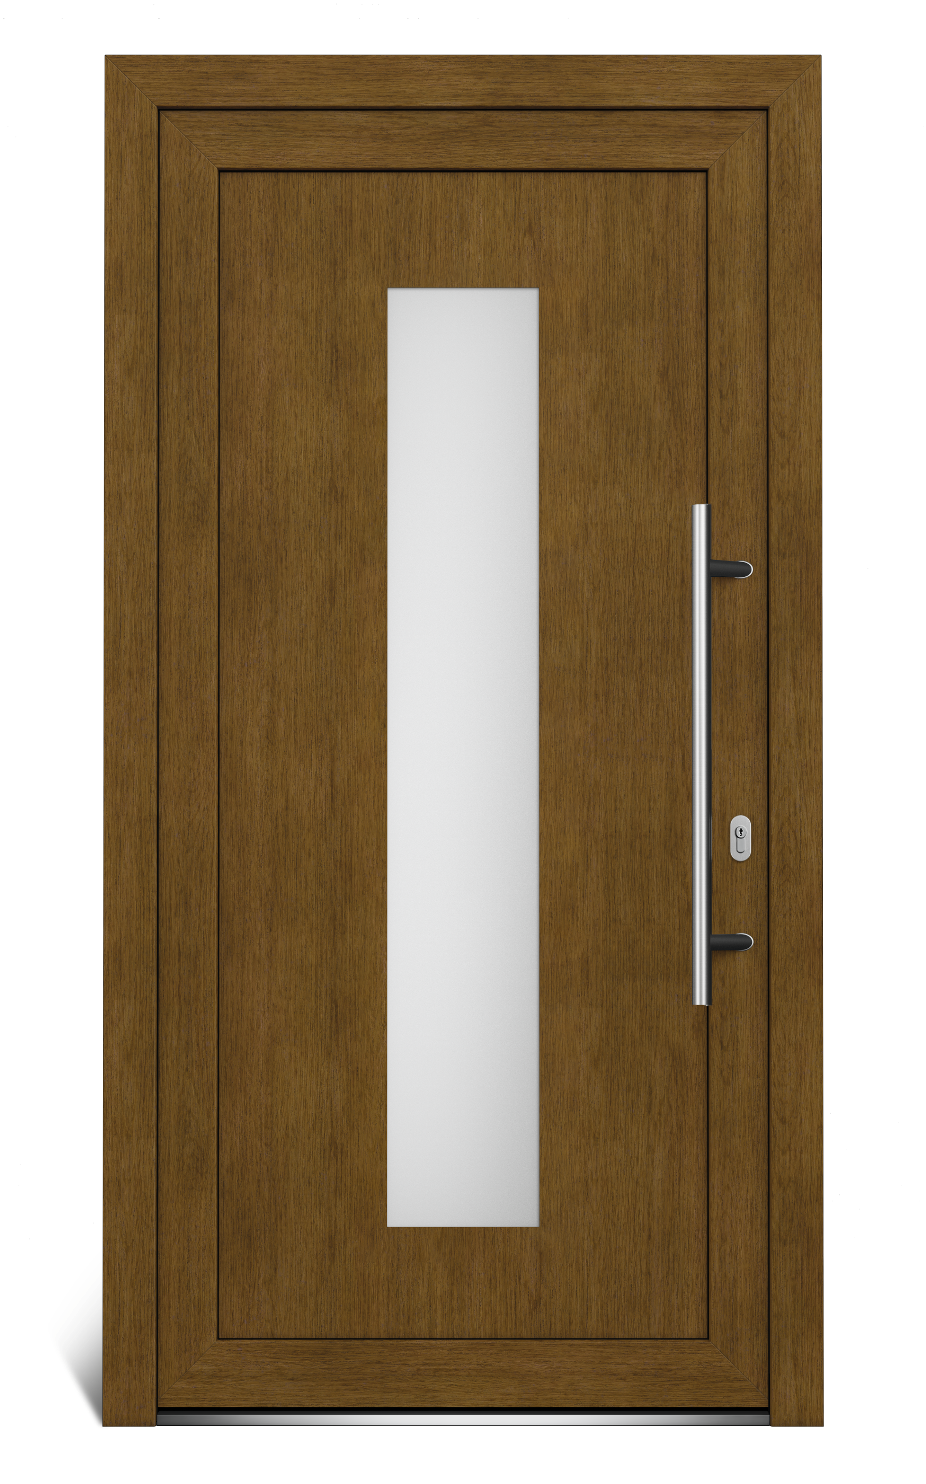 Hlavné vchodové dvere EkoLine pravé - SKLADOVÉ-OKNÁ.sk - 1044 x 2020.